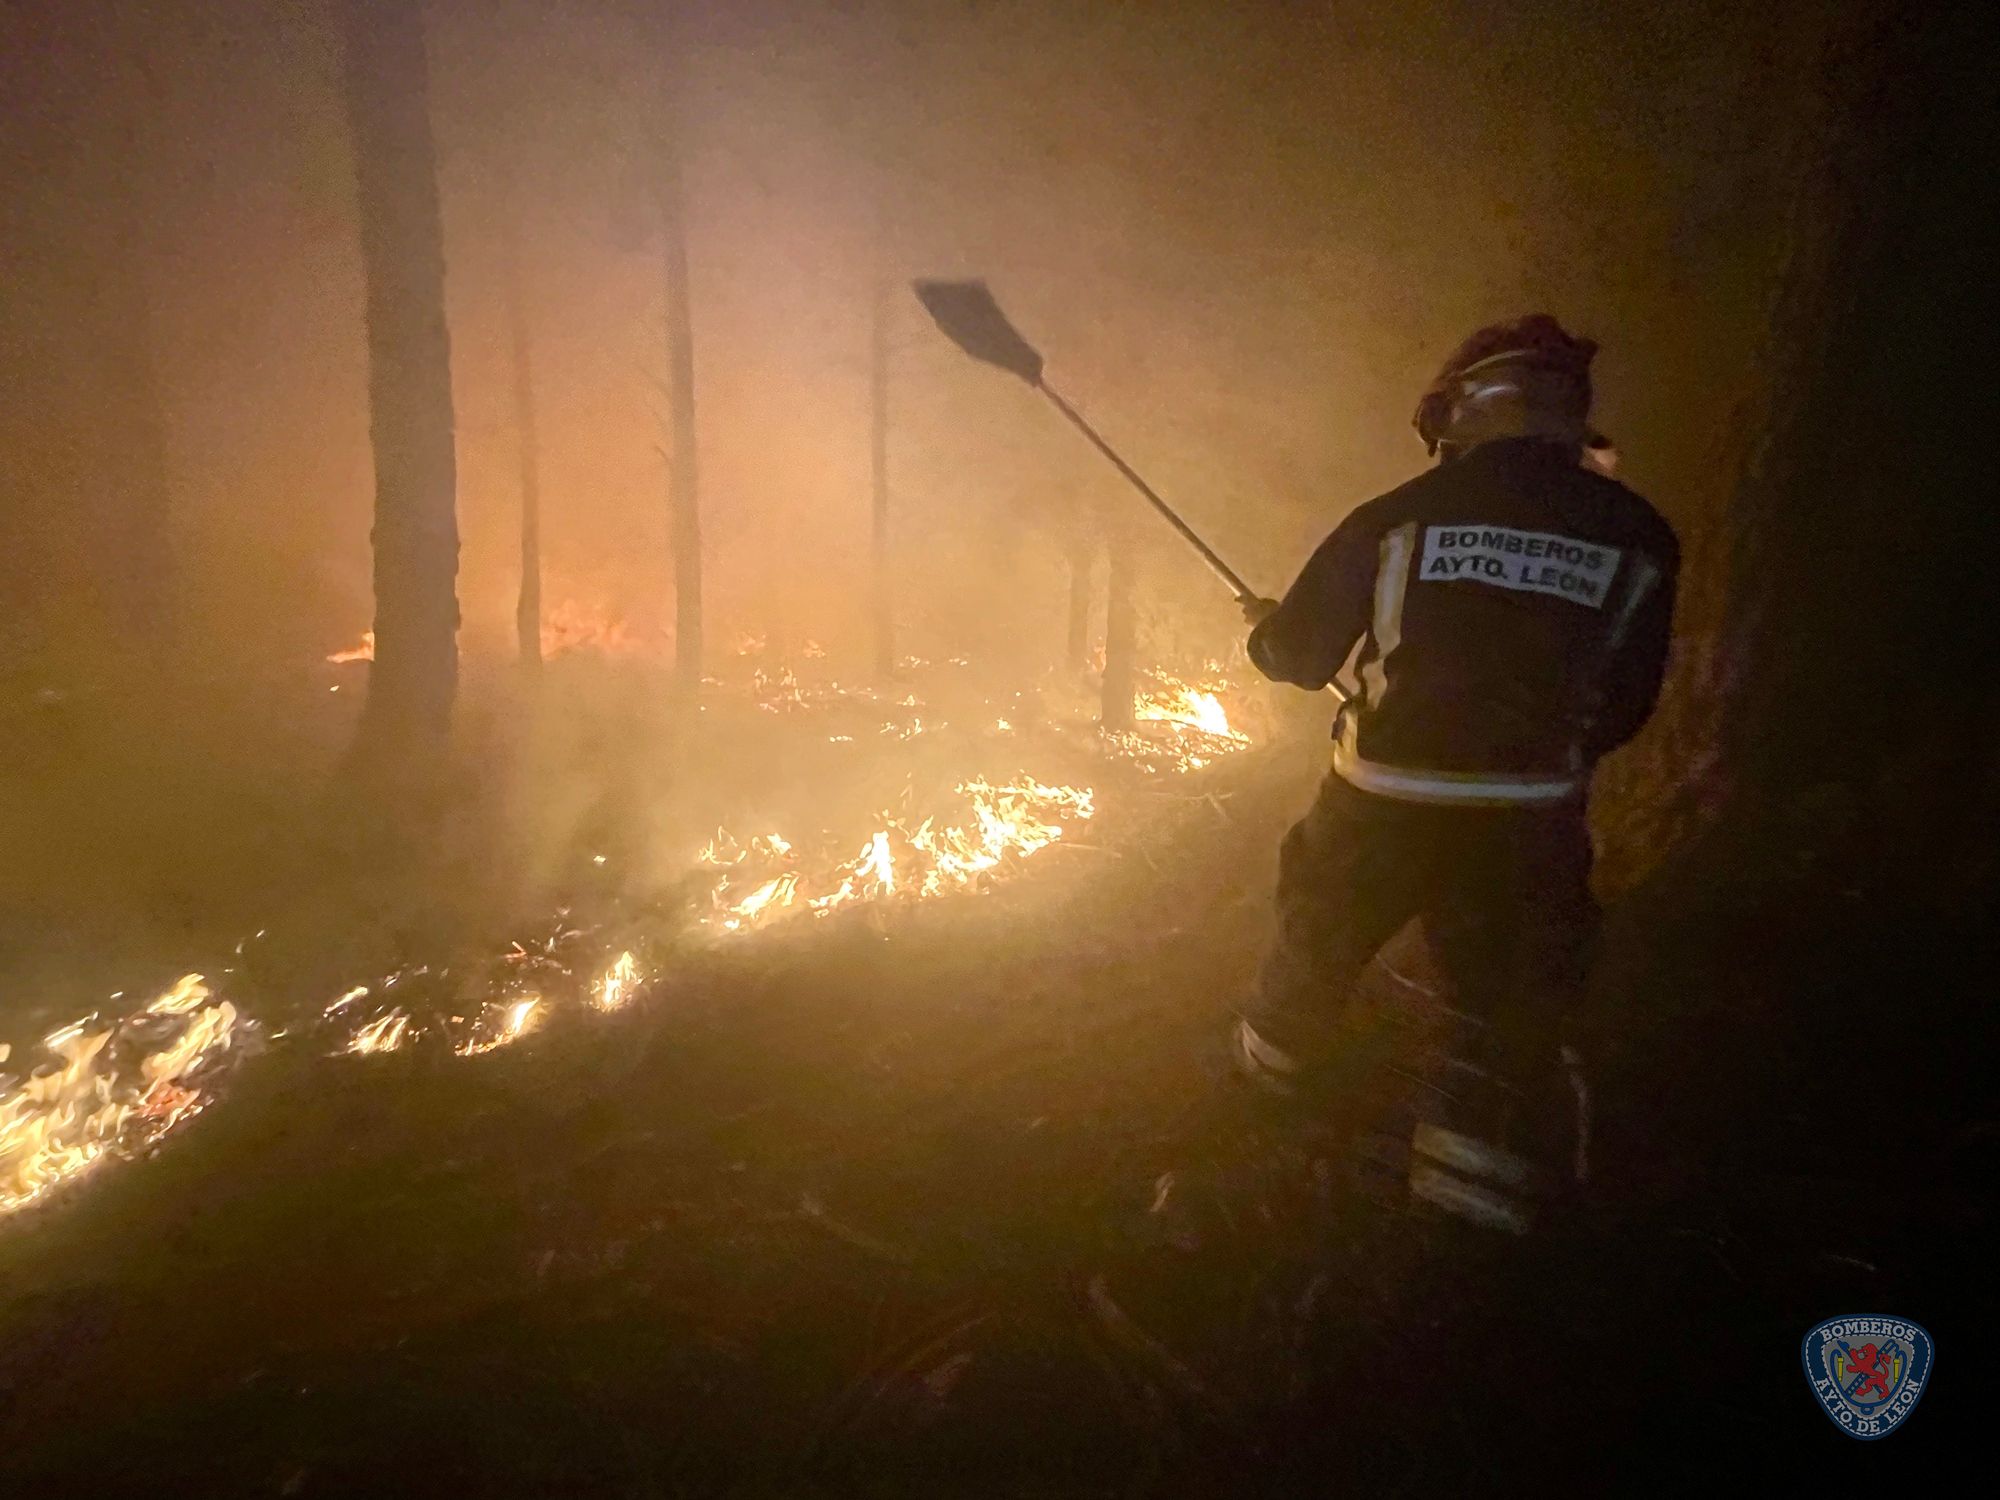 Imagen de archivo en la que un bombero de León trata de sofocar un fuego. | L.N.C.